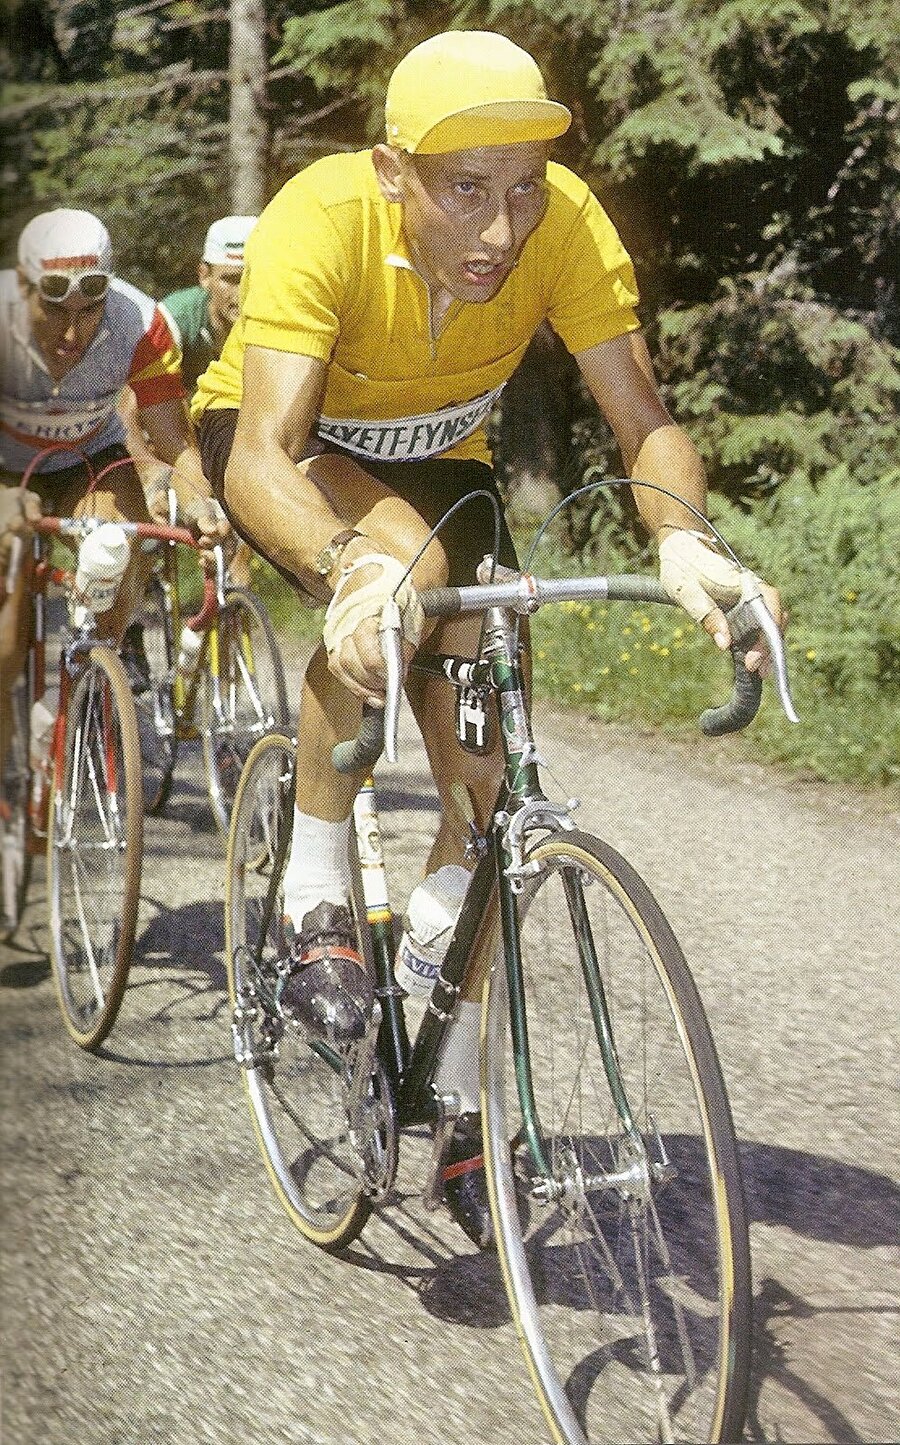 Tour de France'ı beş kez kazandı

                                    
                                    
                                    
                                    
                                    Anquetil; 1957, 1961, 1962, 1963, 1964 yıllarında Fransa Bisiklet Turu'nu beş kez kazandı. Anquetil, Tour de France'ı 5 kez kazanan ilk bisikletçidir.
                                
                                
                                
                                
                                